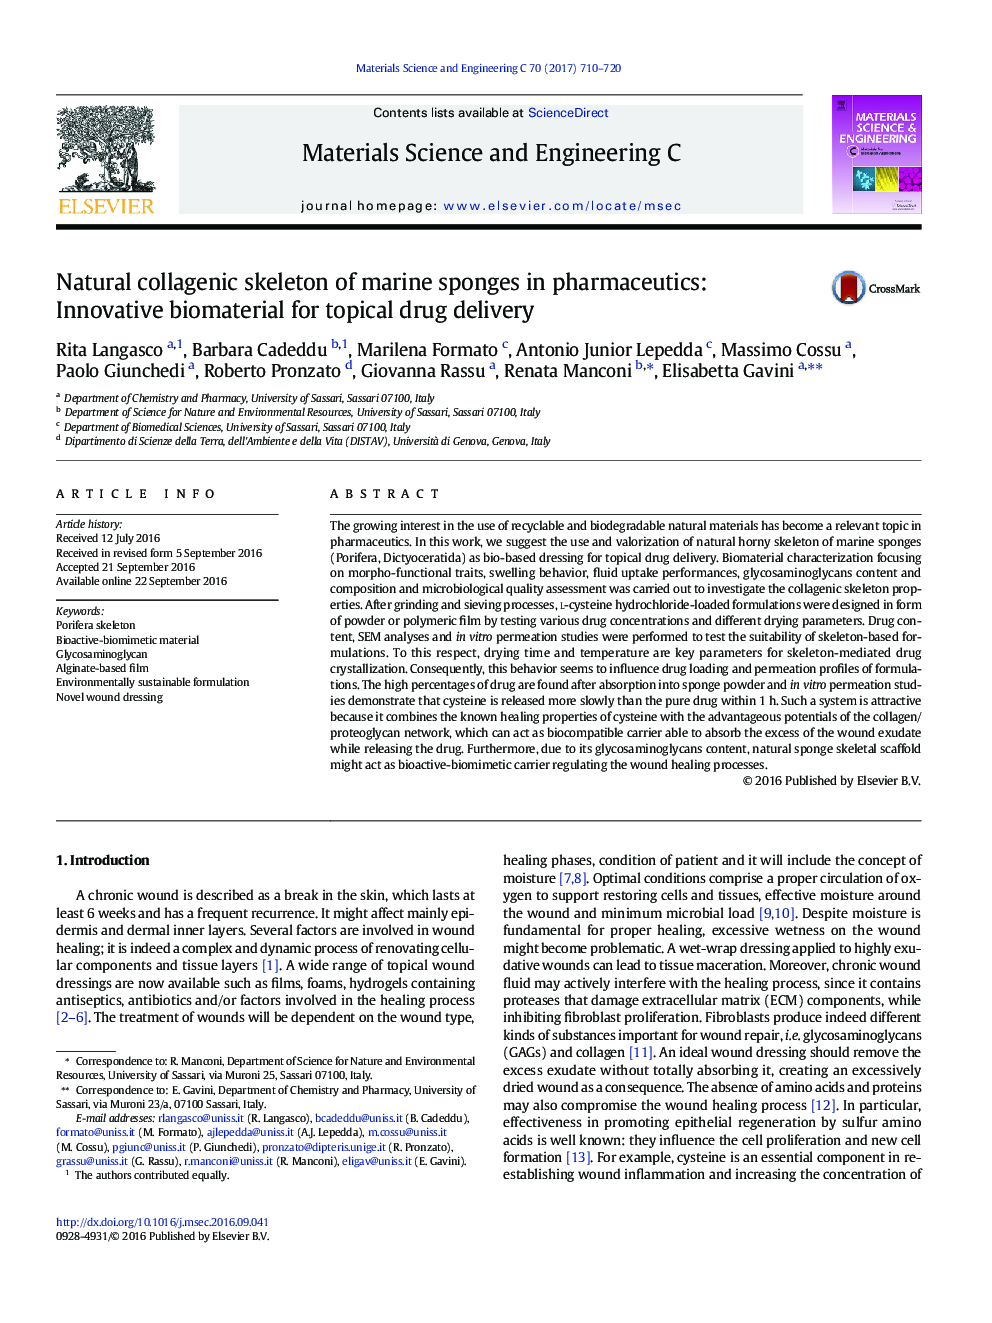 اسکلت کلاژن طبیعی اسفنج های دریایی در داروخانه: مواد بیولوژیکی نوآورانه برای تحویل داروی موضعی